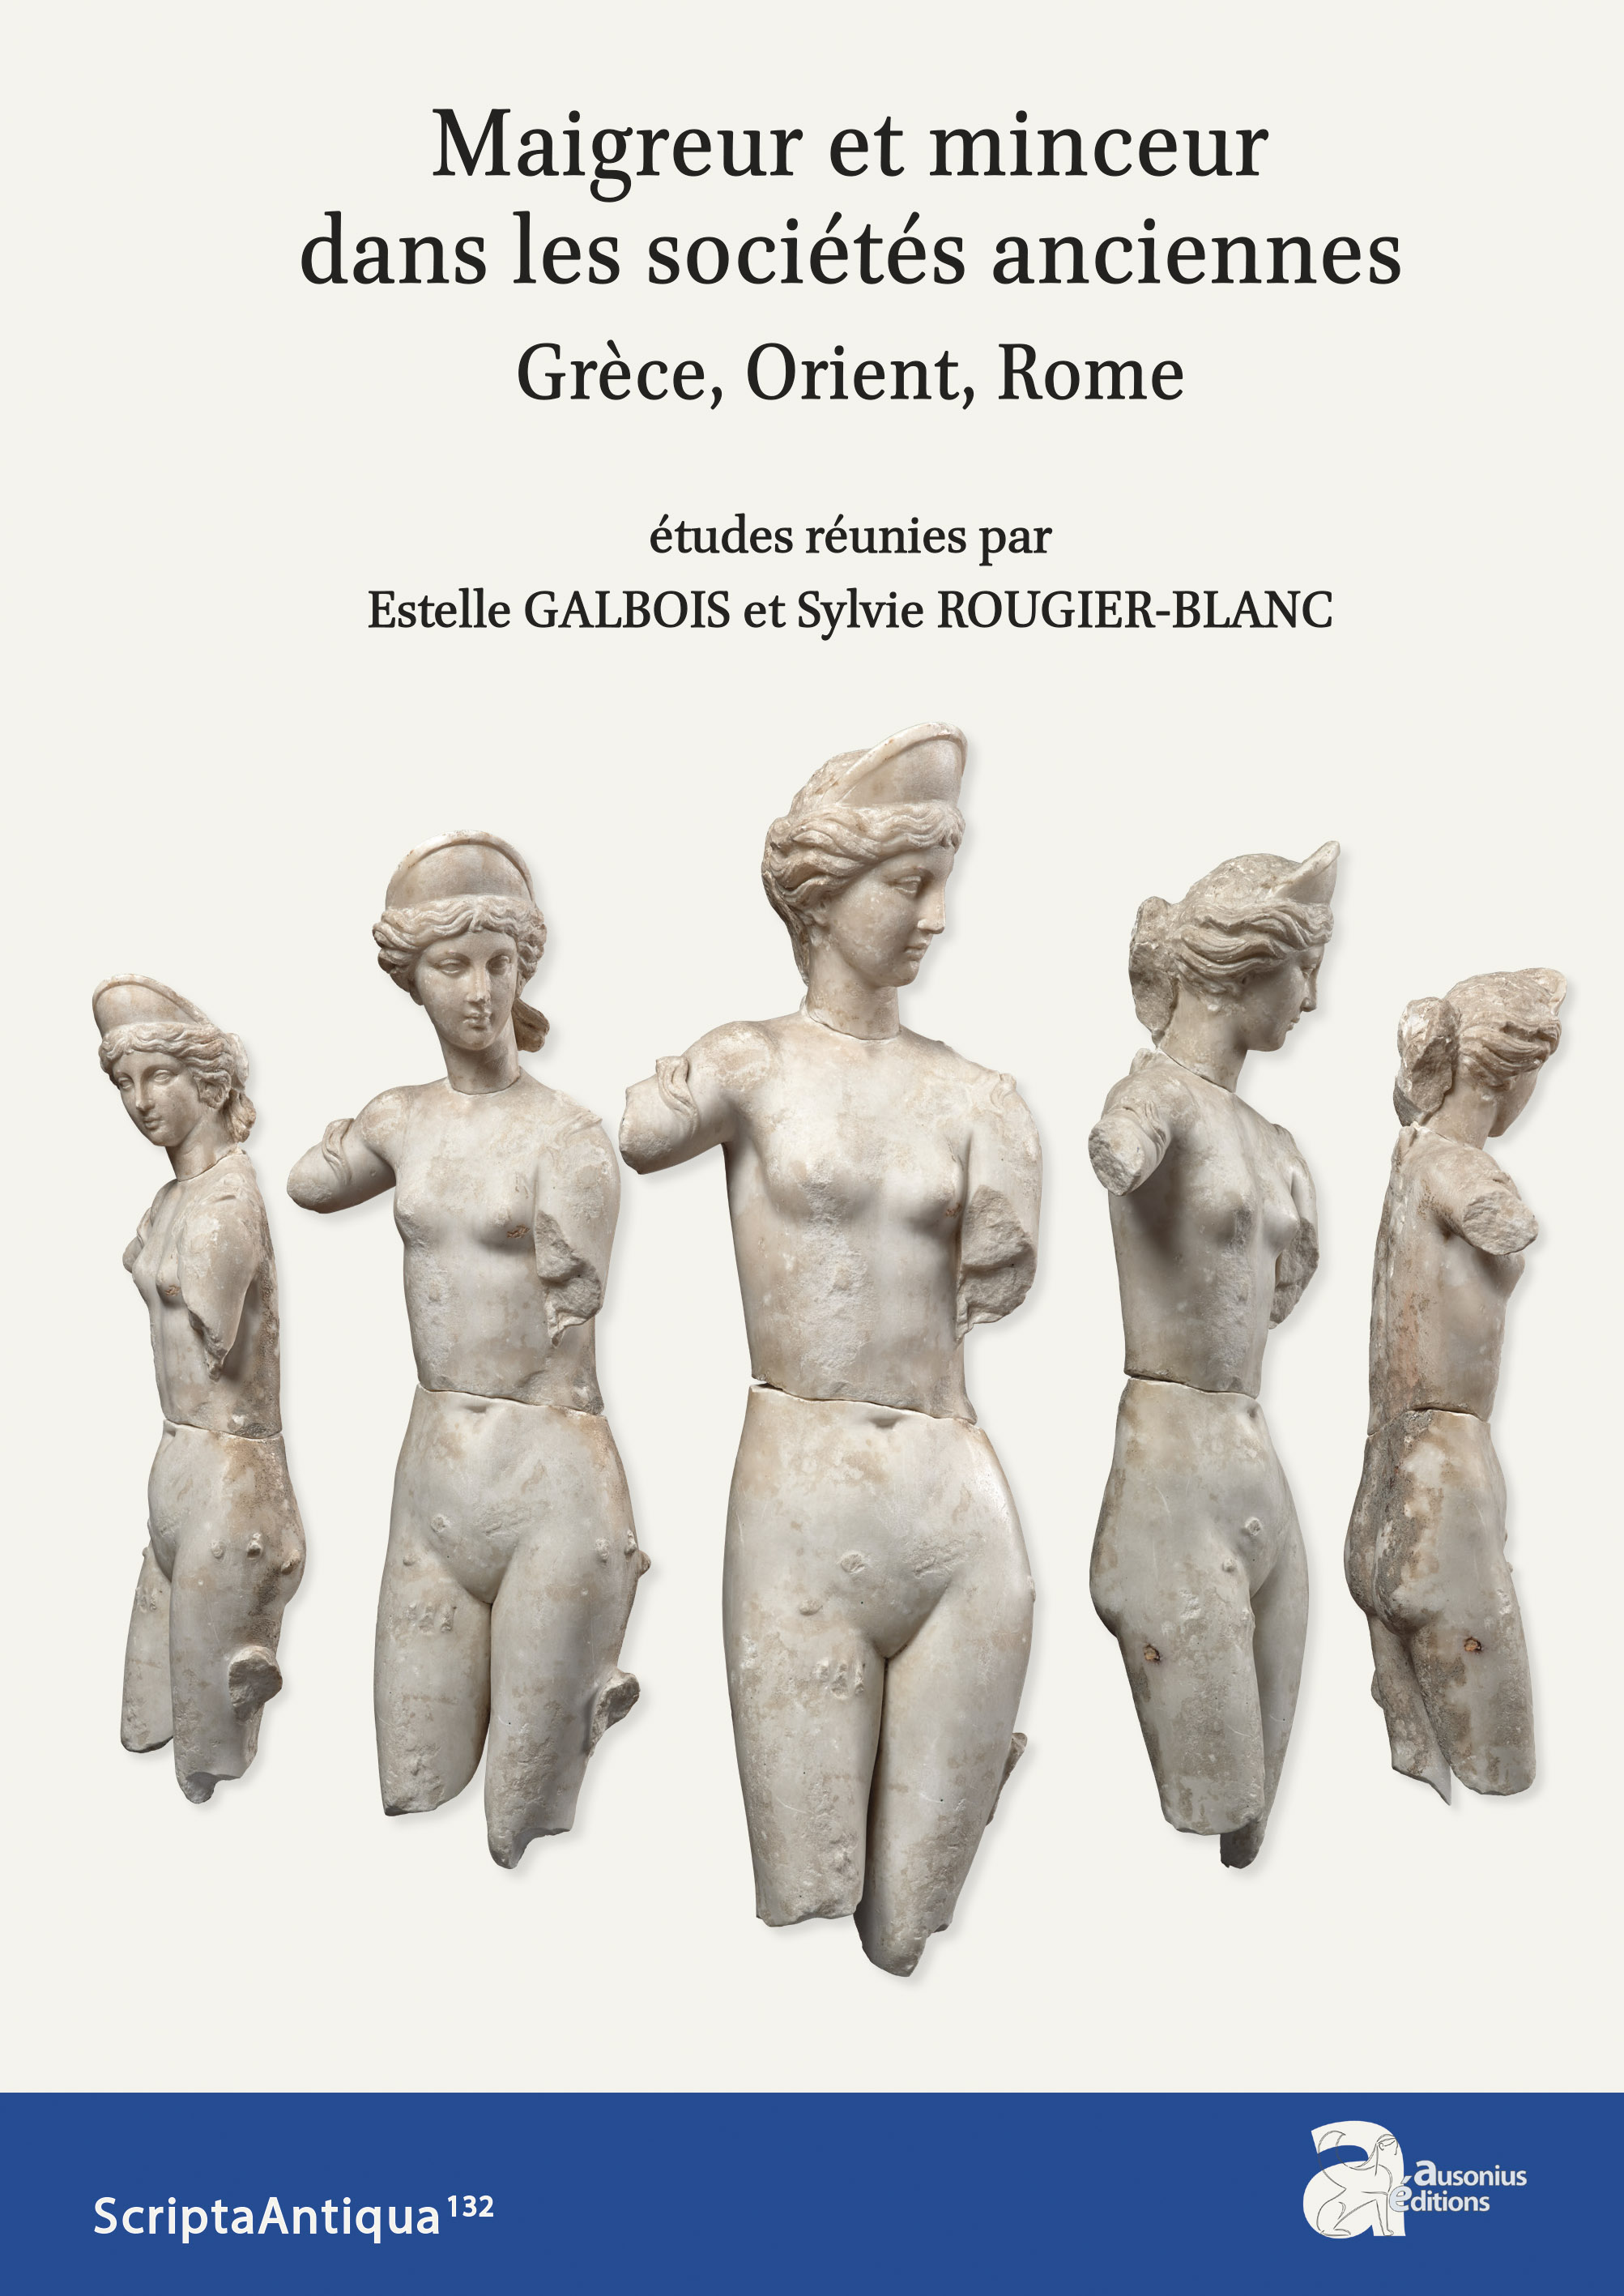 Maigreur et minceur dans les sociétés anciennes. Grèce, Orient, Rome, (Scripta antiqua 132), 2020, 405 p.